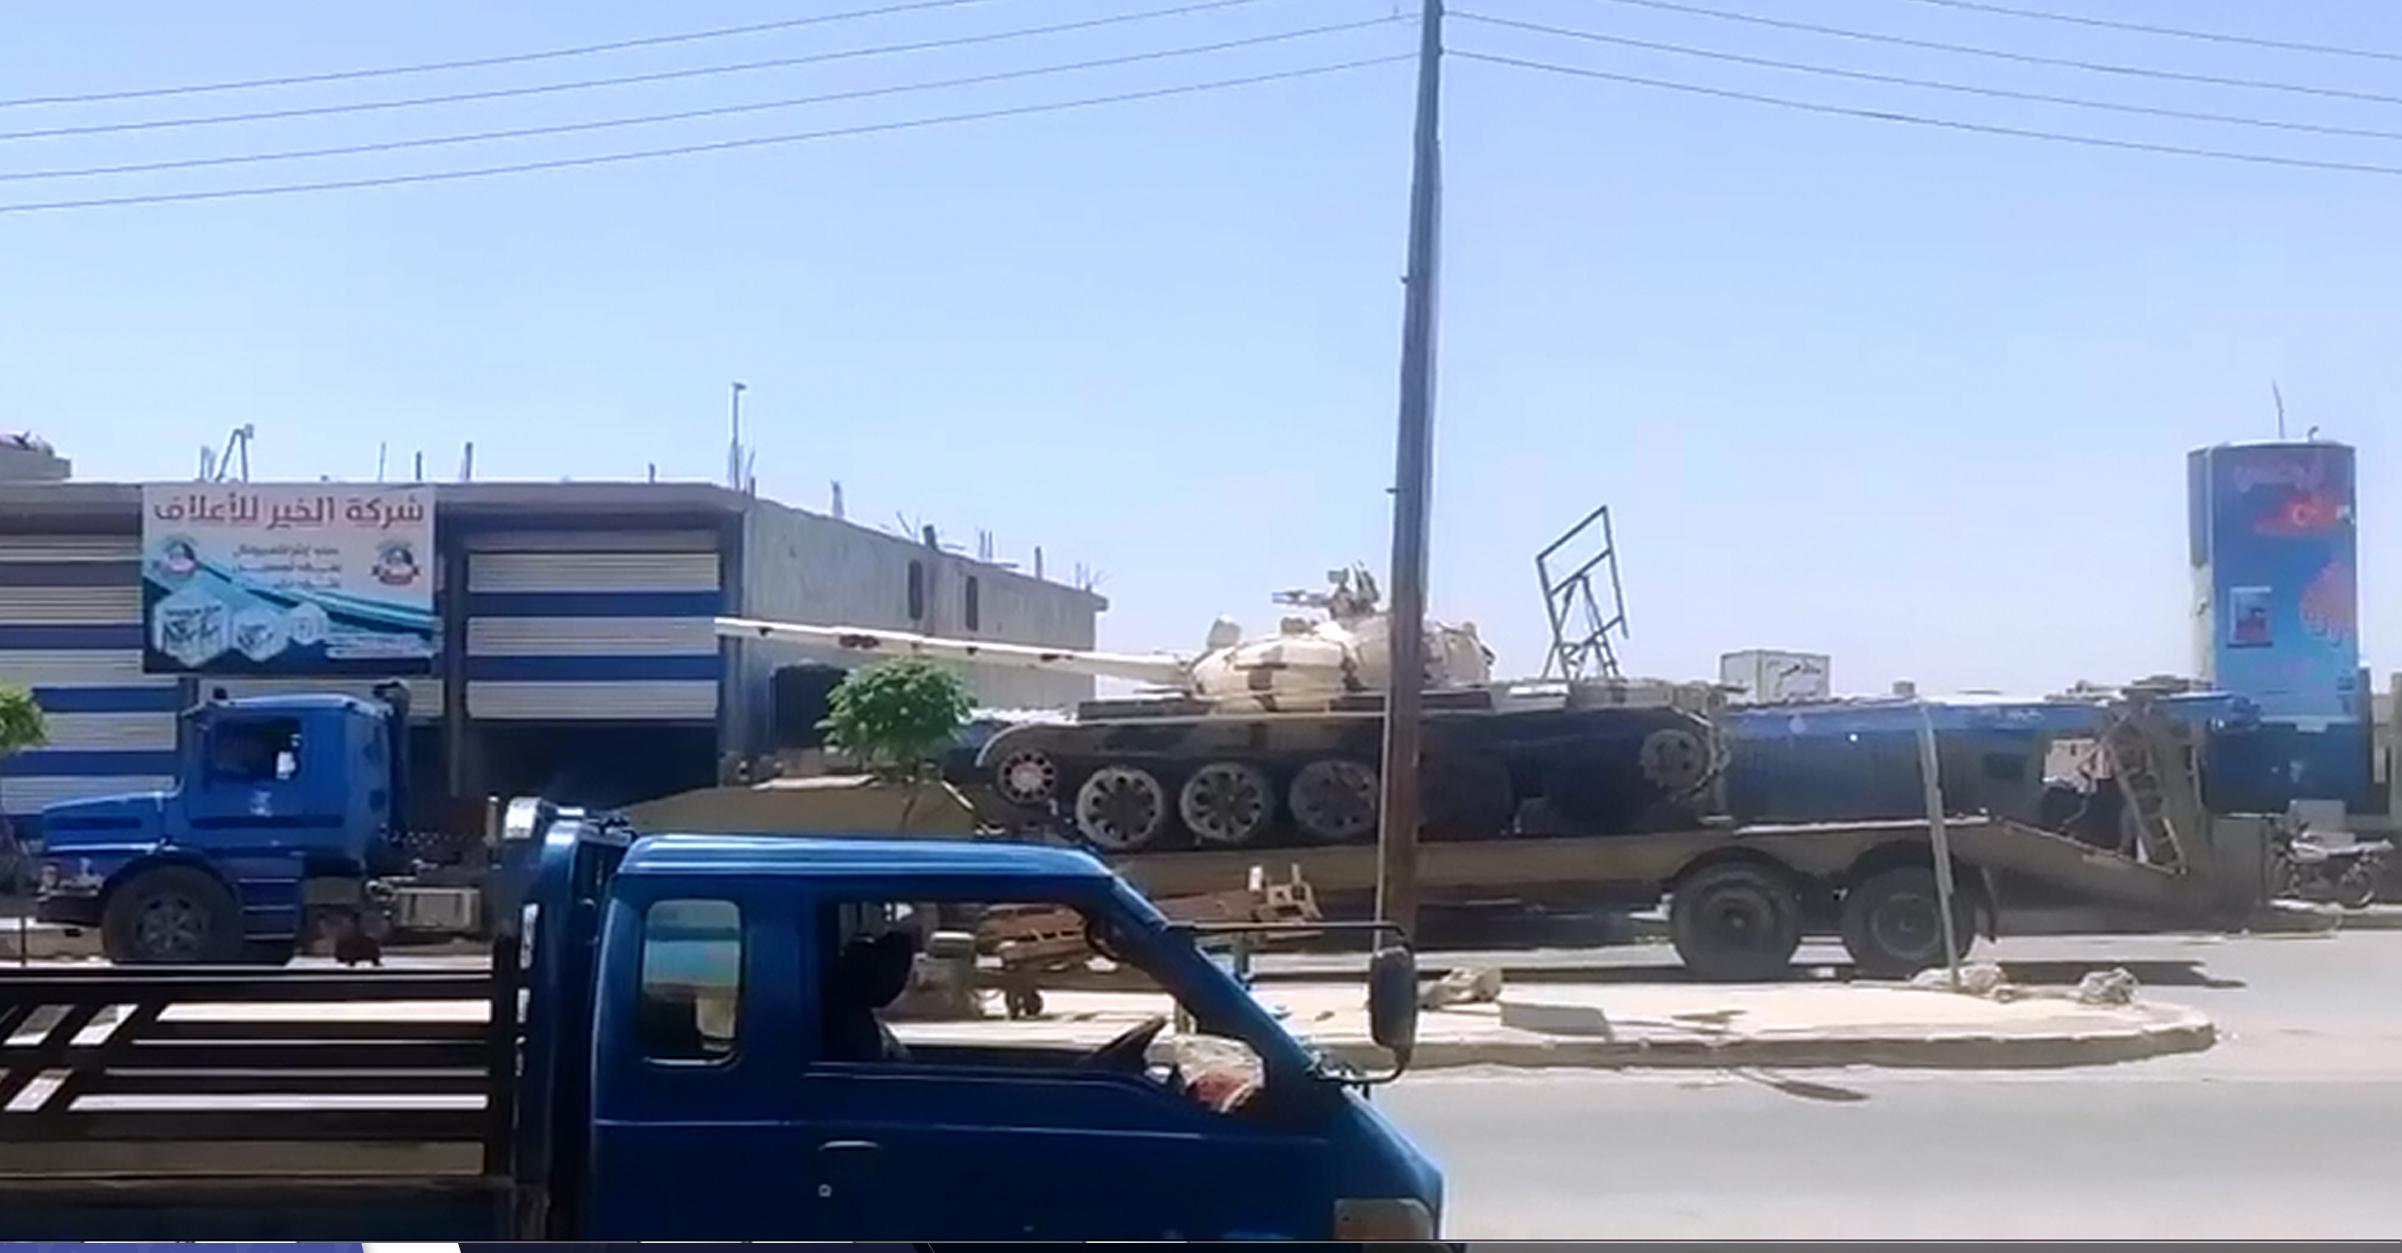 الفيديو || الدبابات بشوارع حلب.. اقتتال هو الأعنف بين فصائل المعارضة السورية الموالية لأنقرة